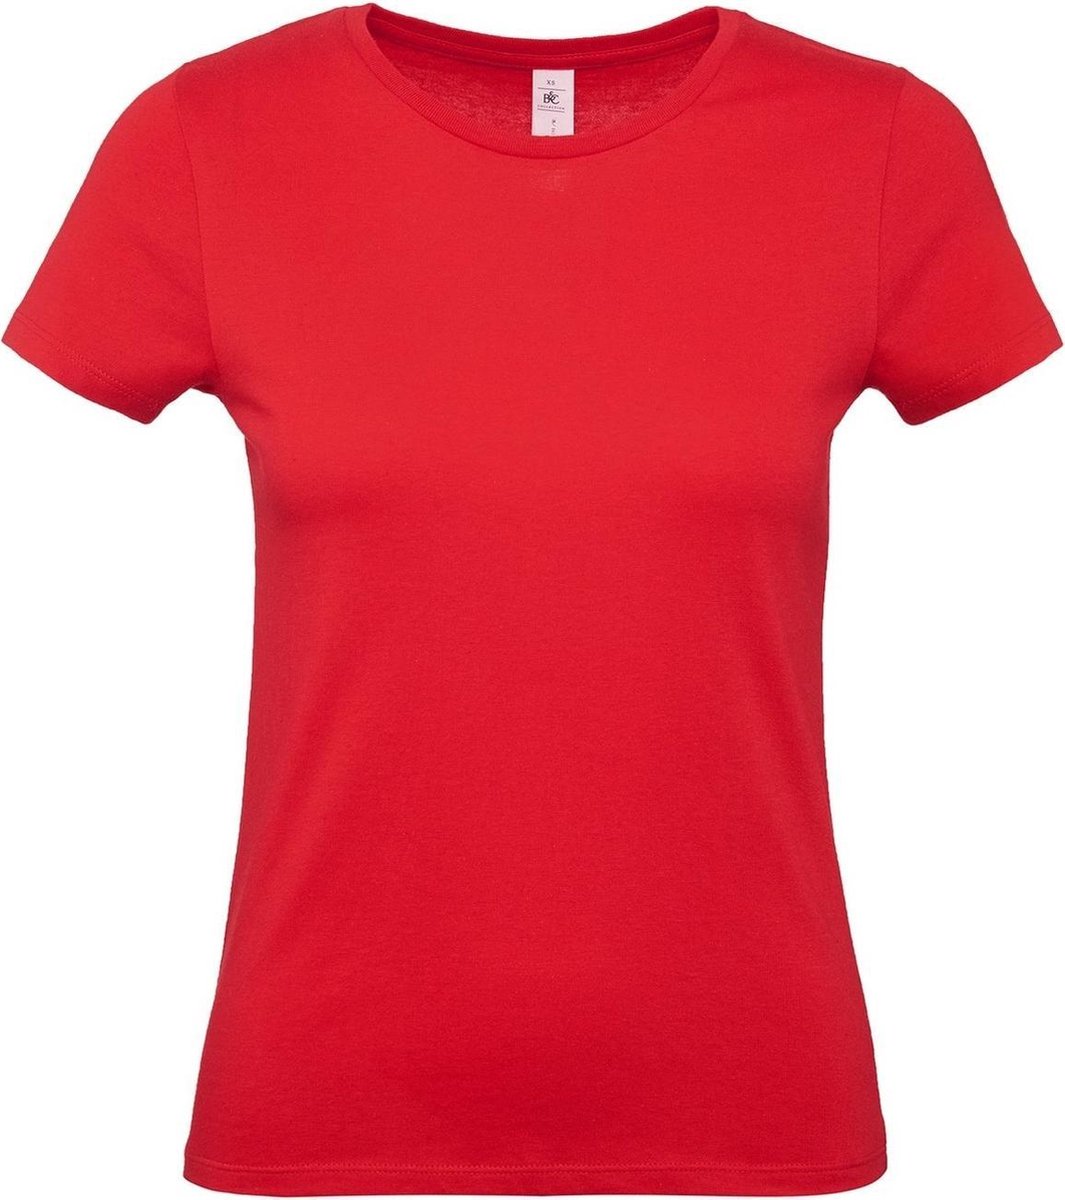 Set van 3x stuks rood basic t-shirts met ronde hals voor dames - katoen - 145 grams - rode shirts / kleding, maat: L (40)